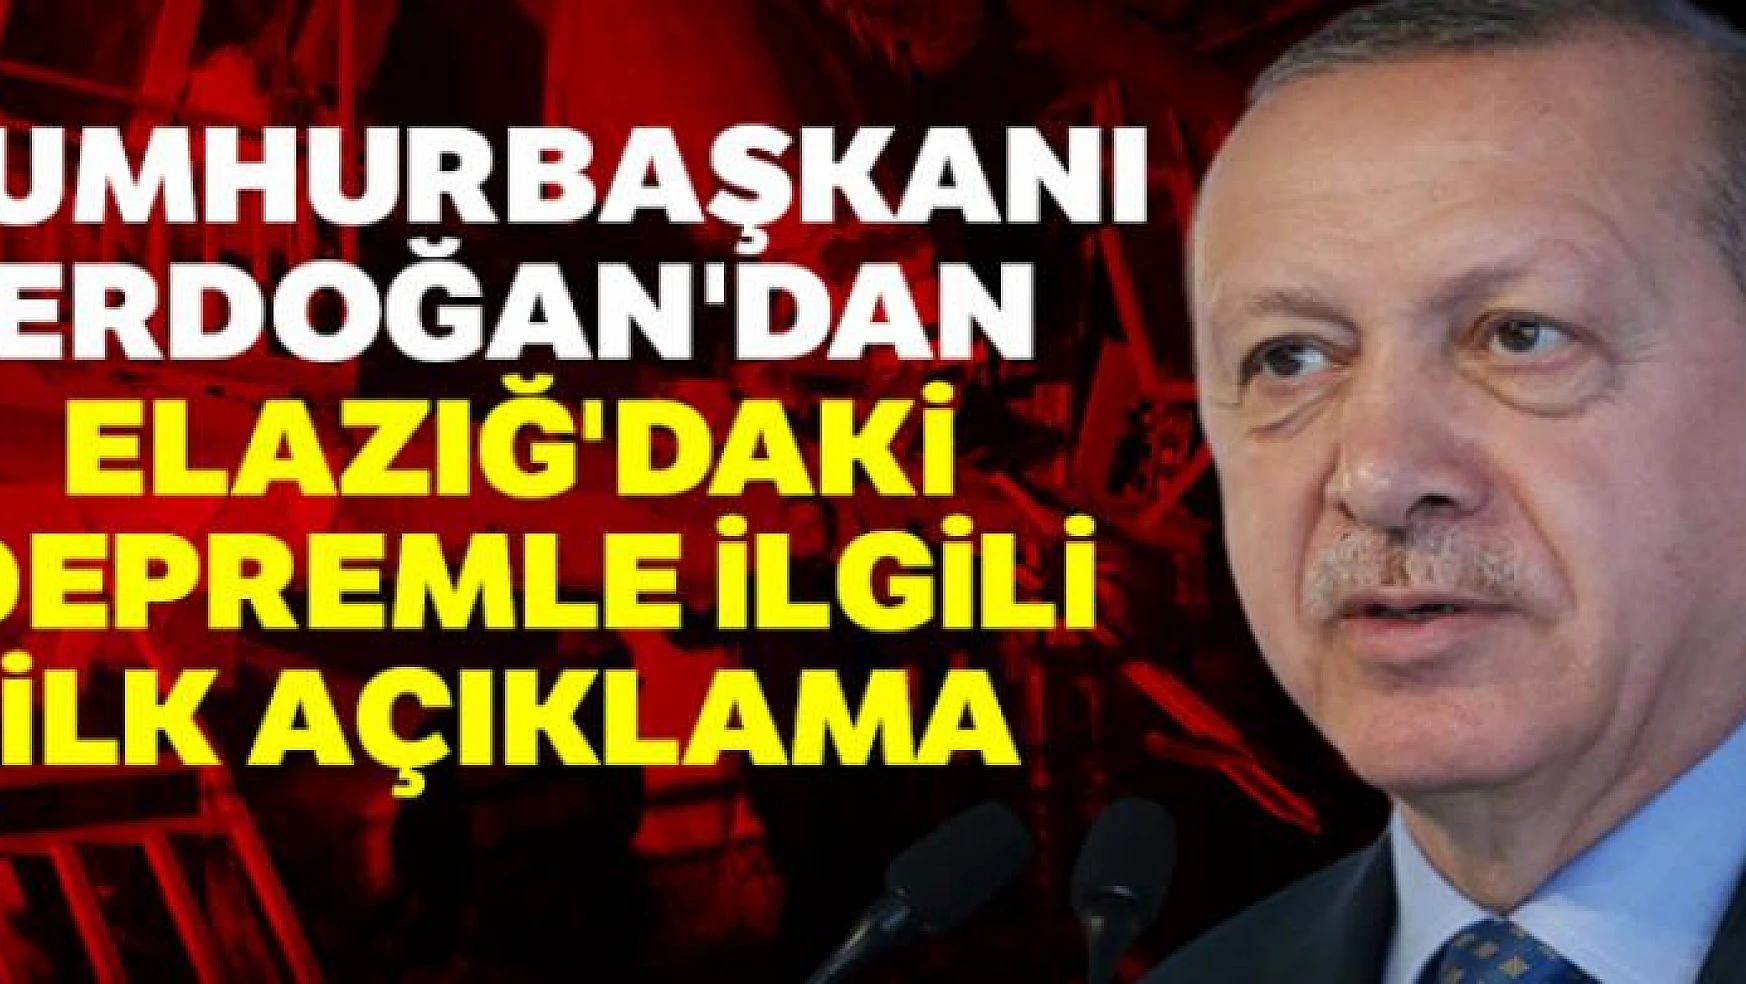 Cumhurbaşkanı Erdoğan'dan Elazığ'daki depremle ilgili ilk açıklama